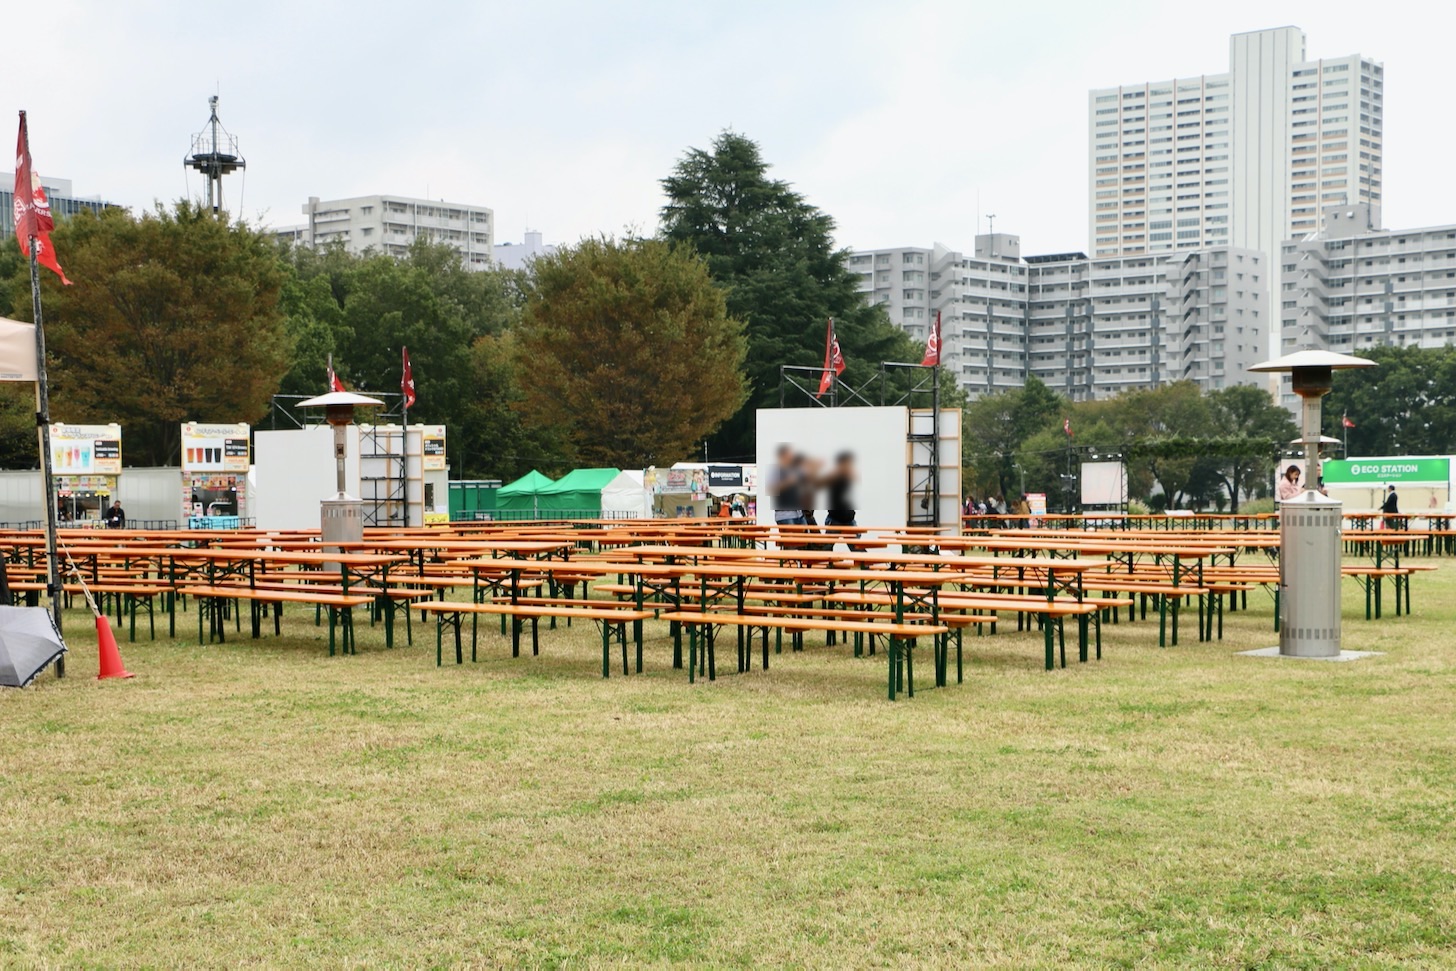 肉フェス国営昭和記念公園2019 野外の飲食エリア